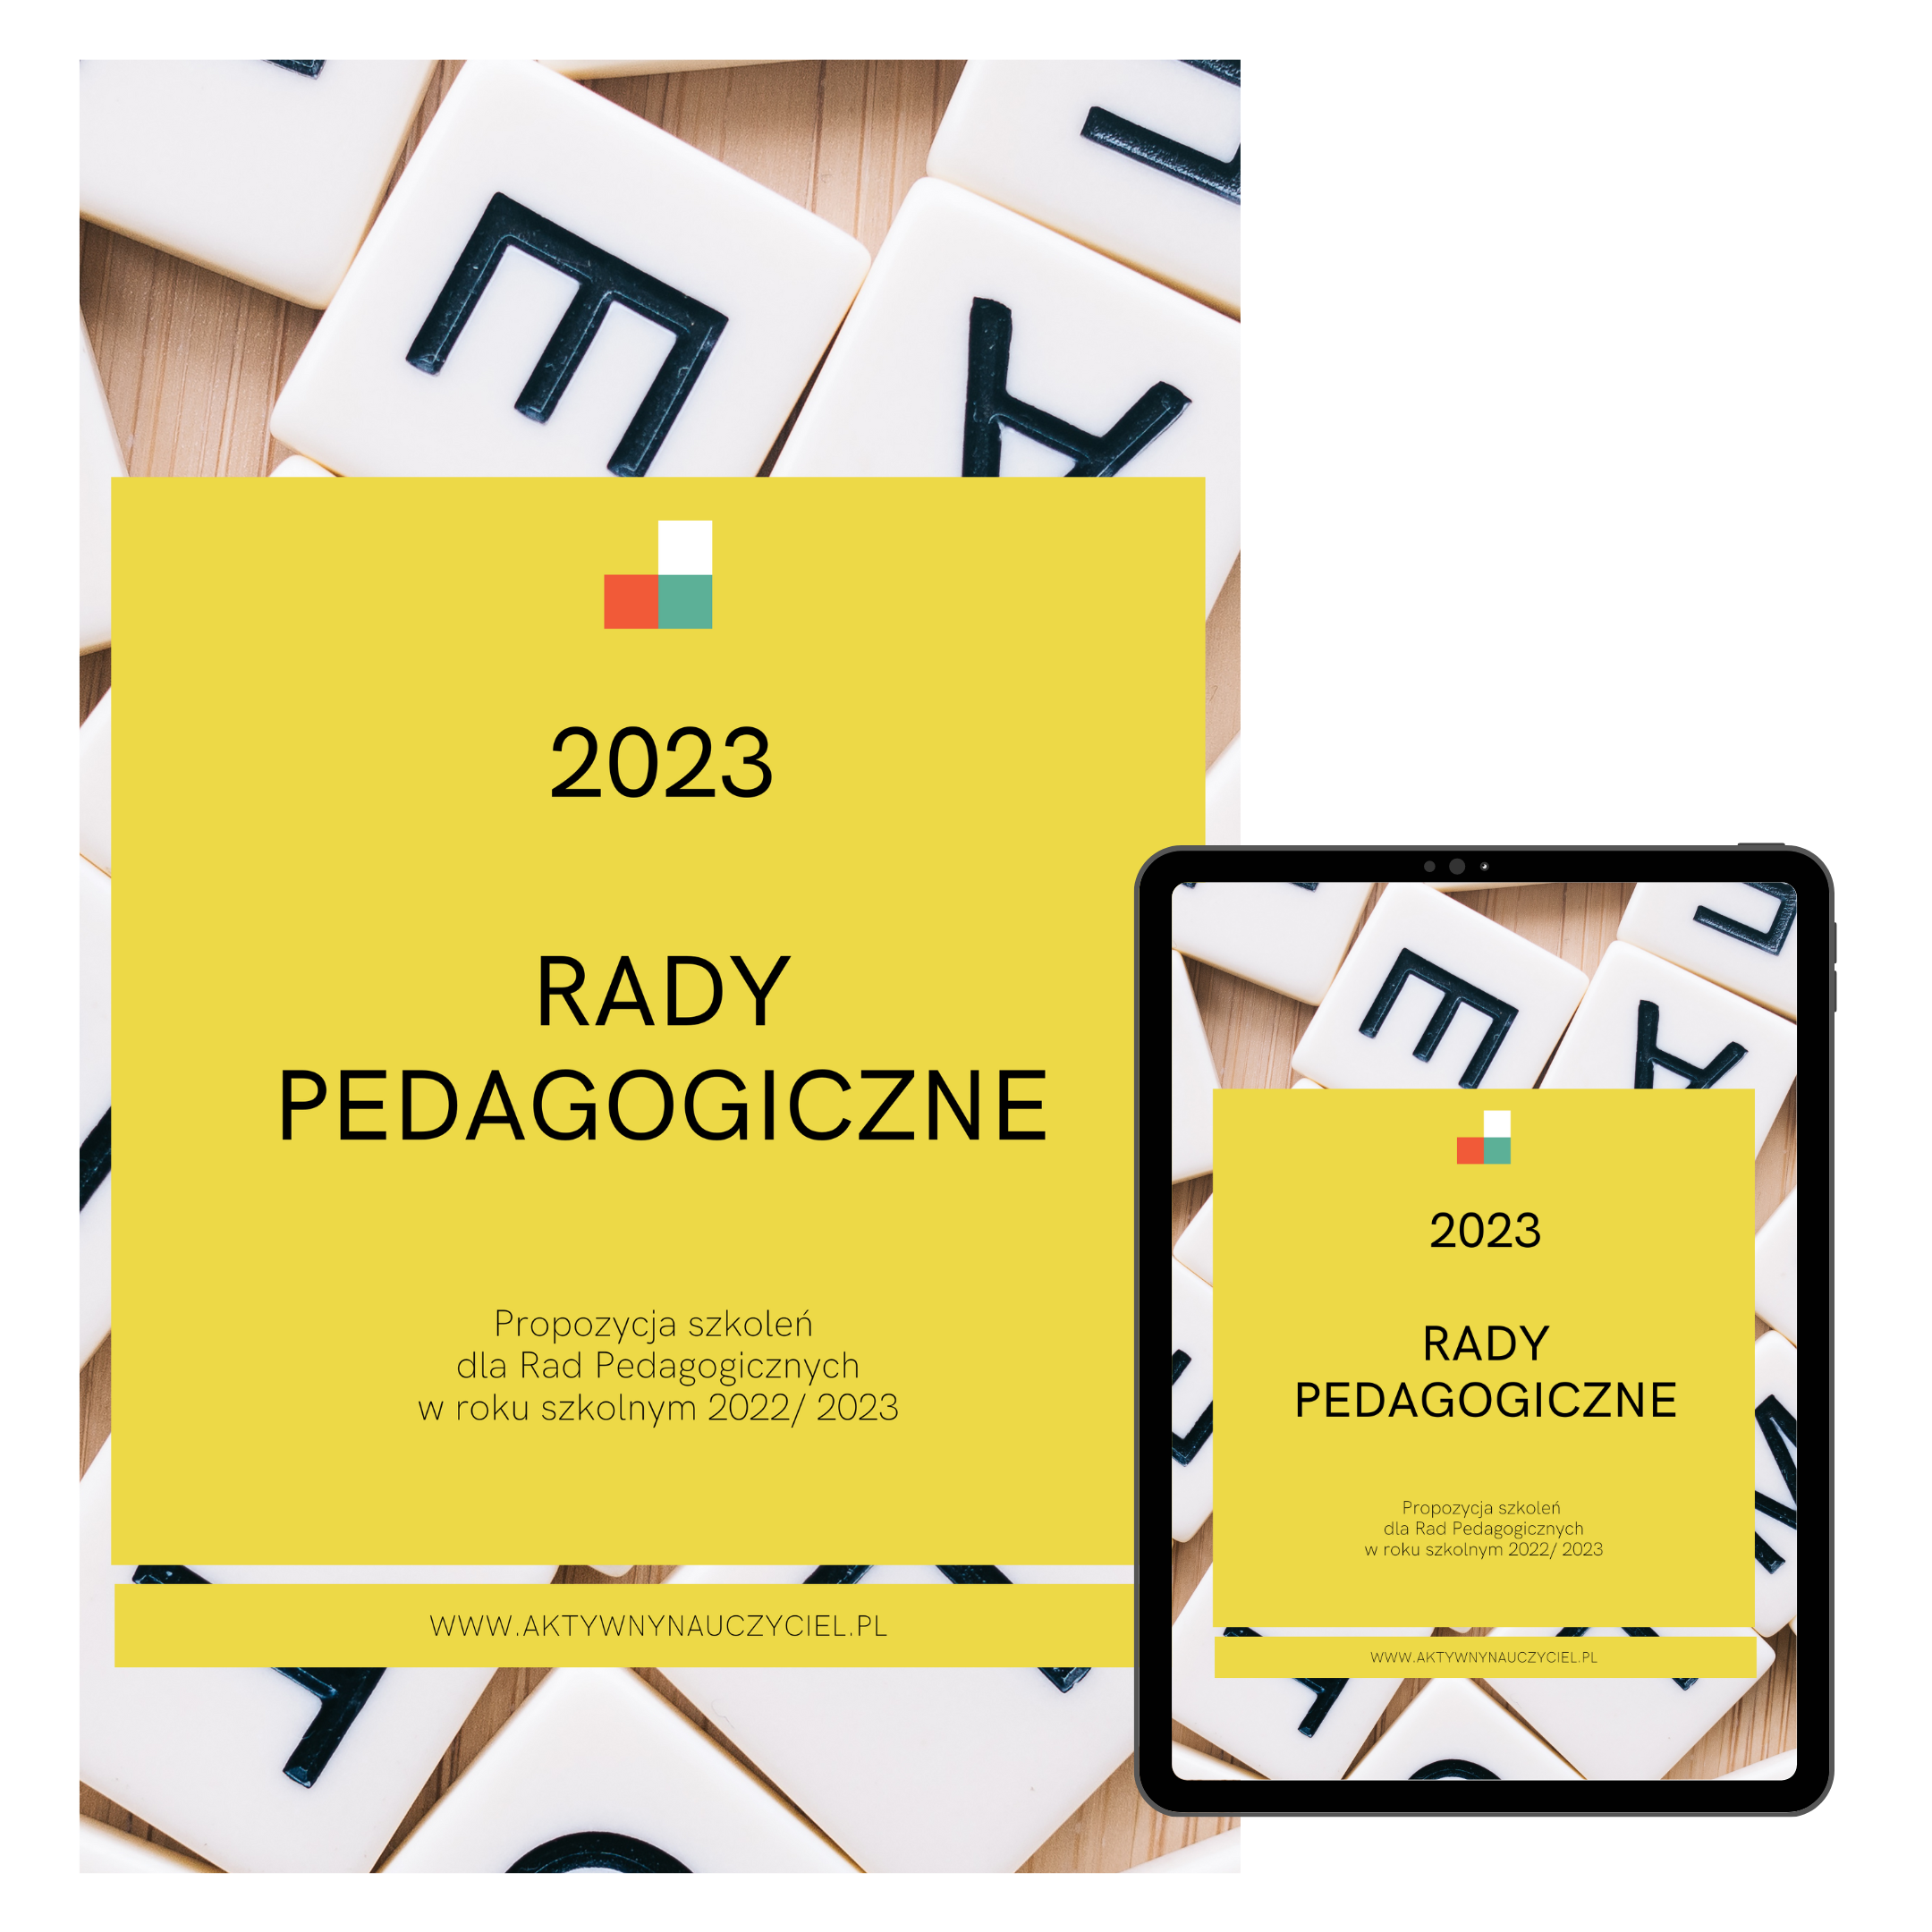 Rady Pedagogiczne 2023 - katalog szkoleń